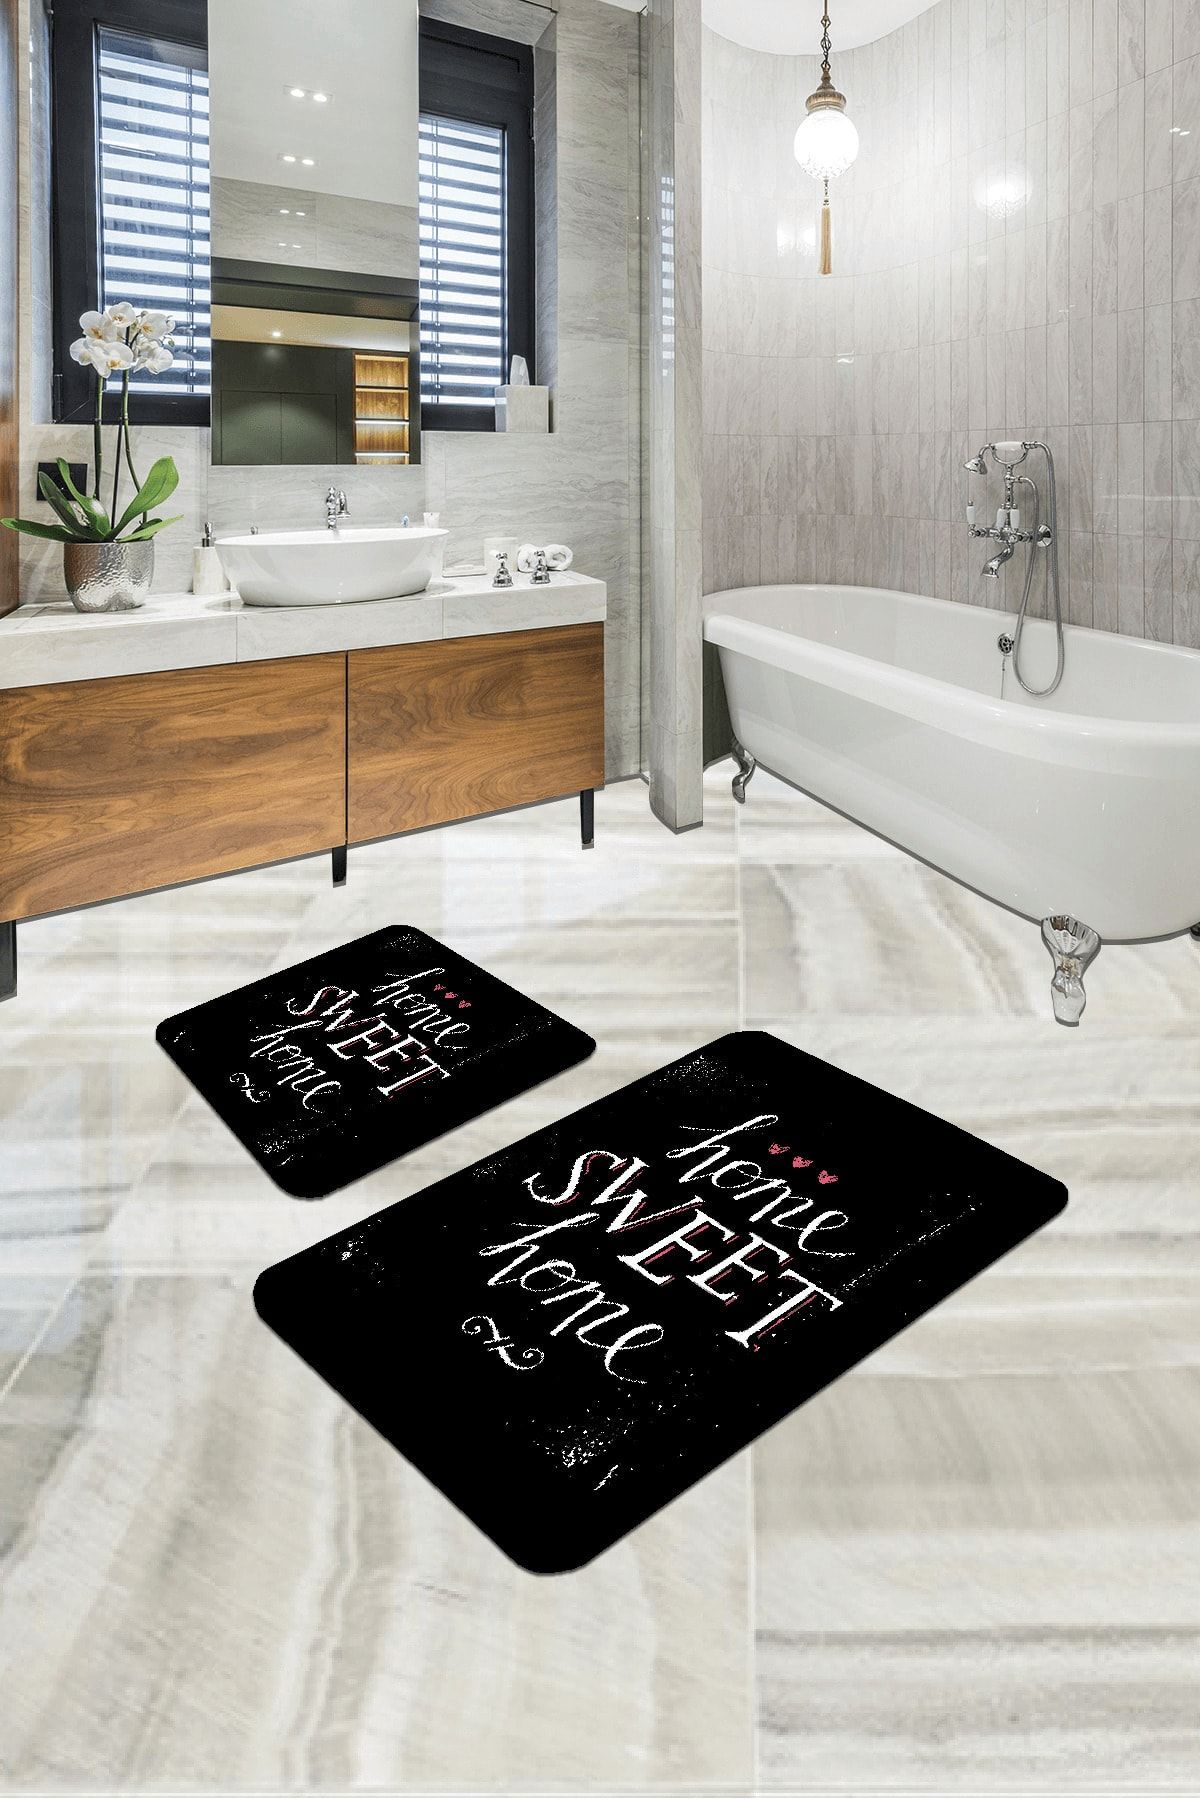 RugViva Dijital Banyo Halısı Klozet Takımı 2'li Paspas Seti Bs301 60x90cm + 60x60cm